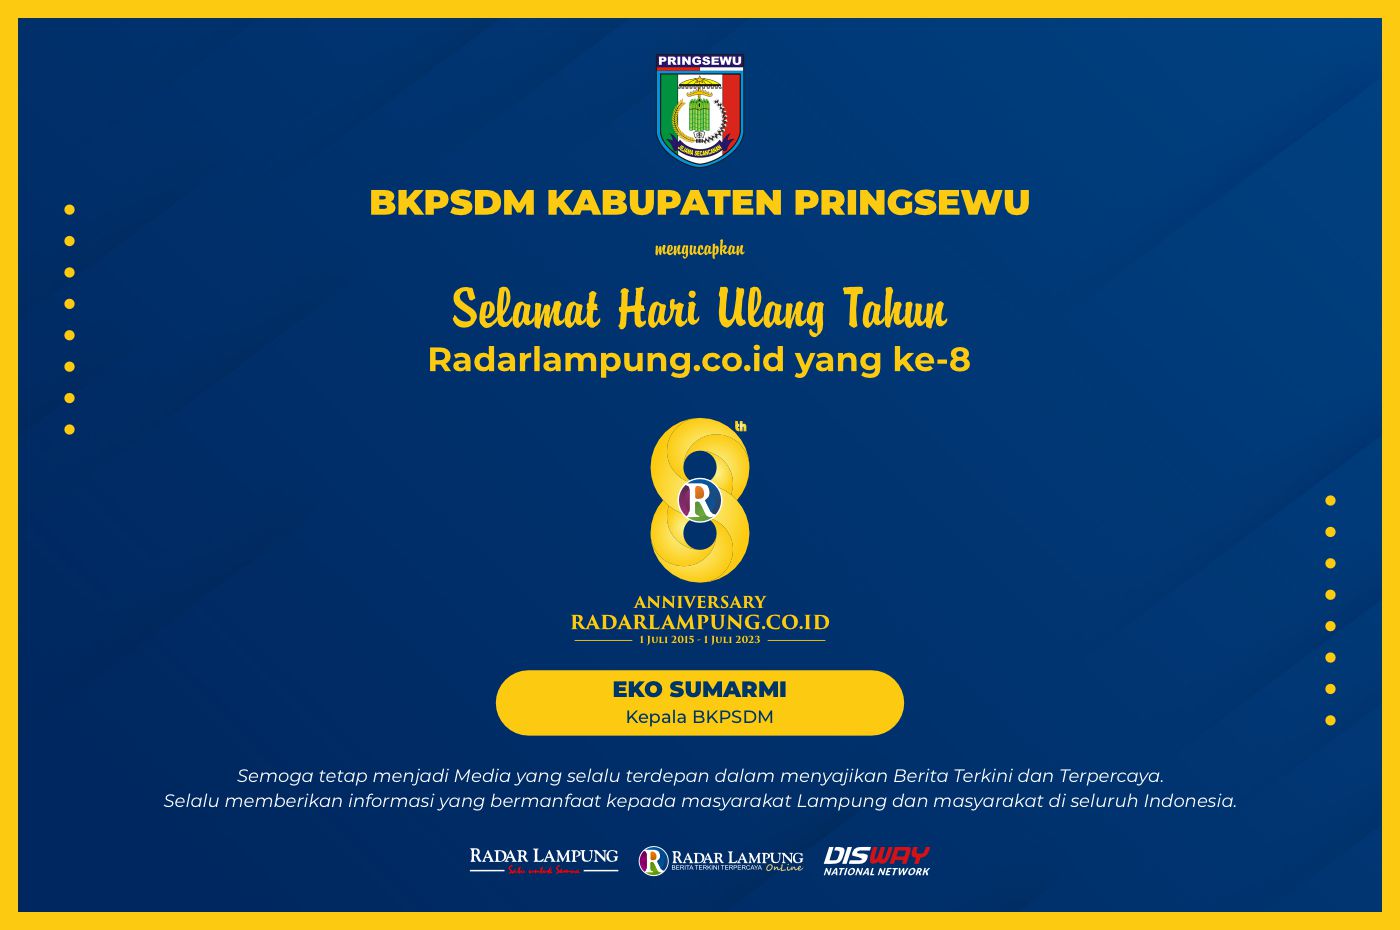 BKPSDM Kabupaten Pringsewu: Selamat Ulang Tahun ke-8 Radar Lampung Online